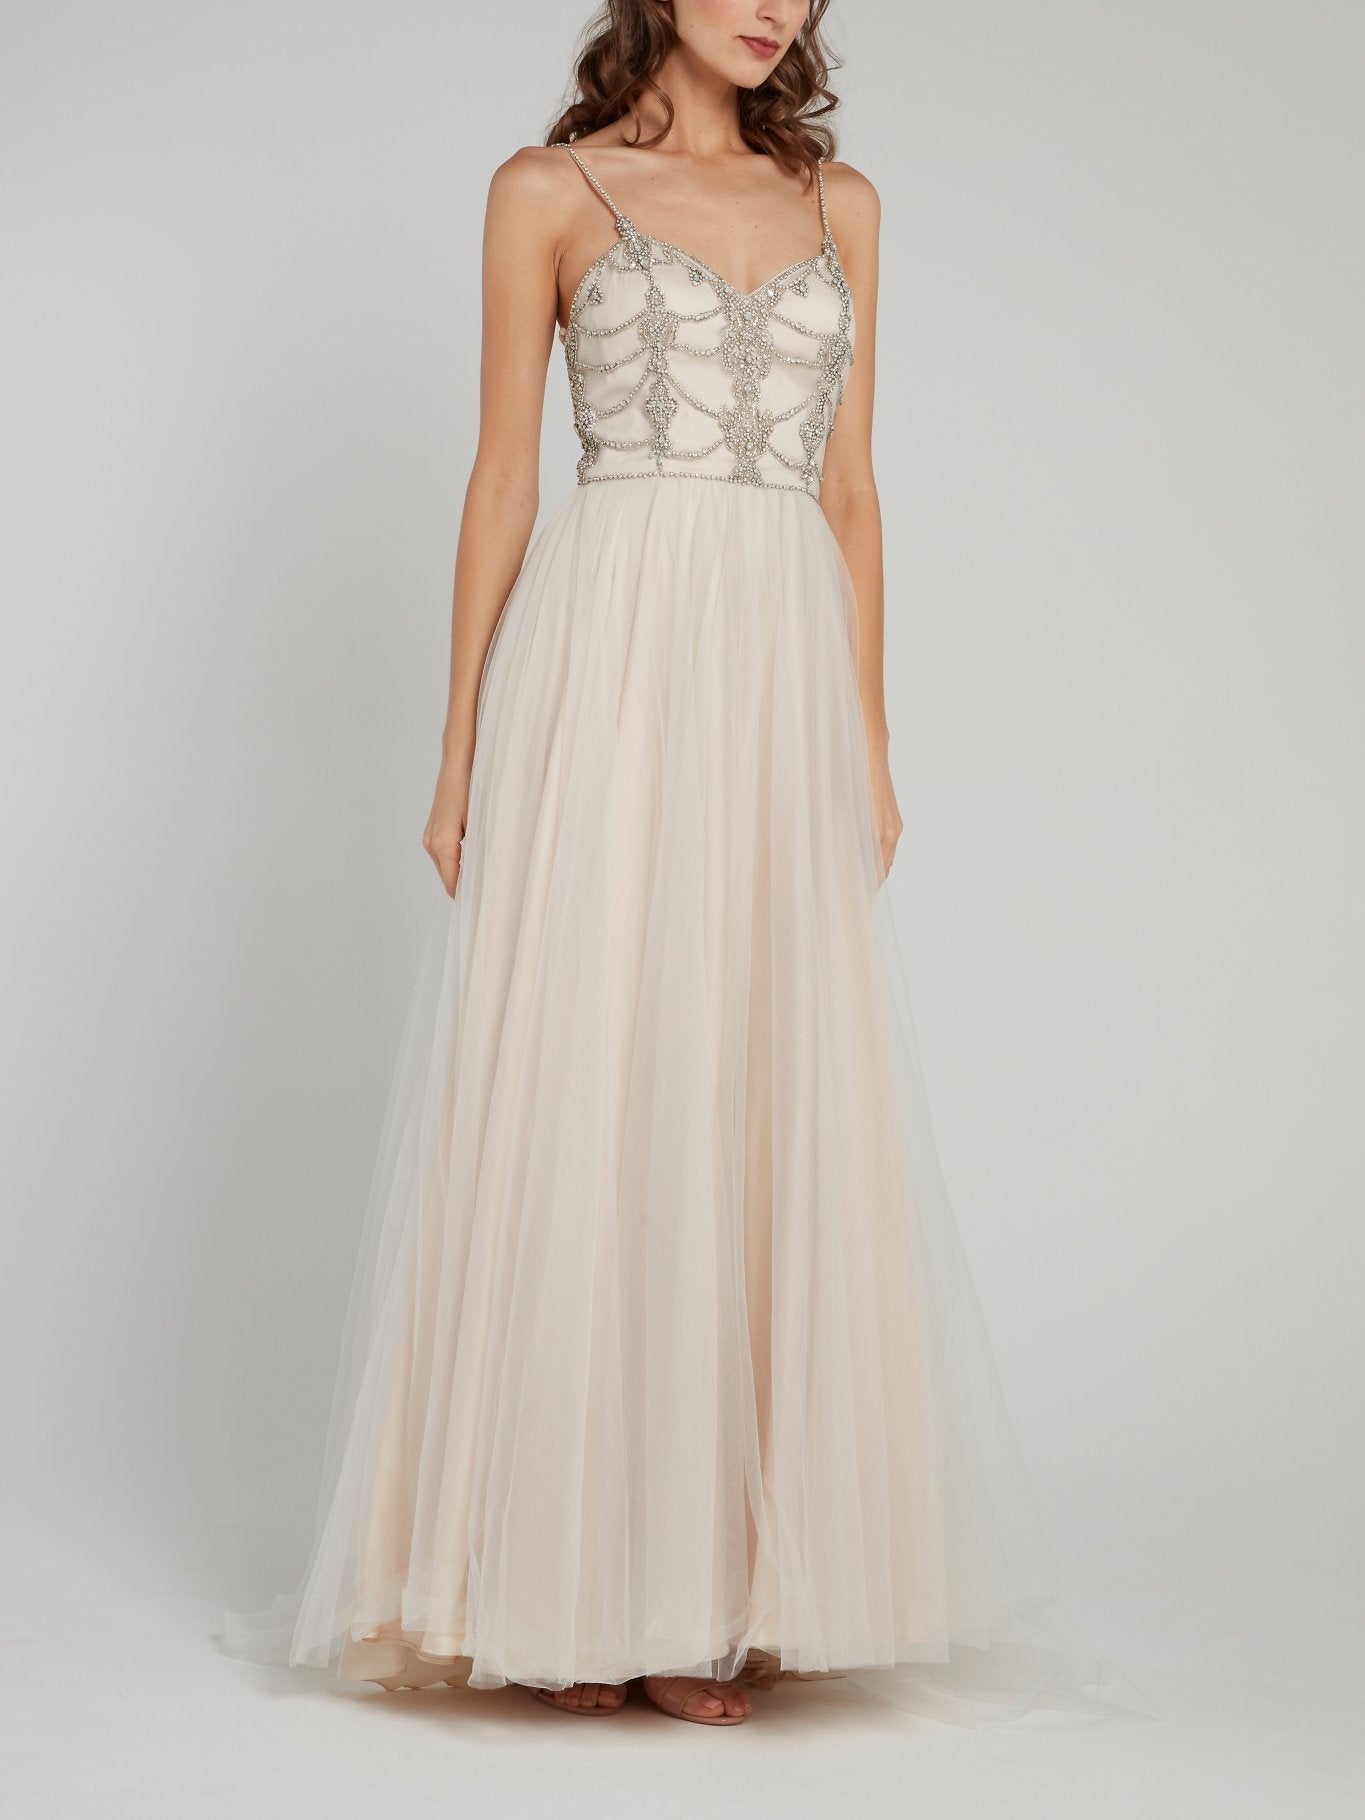 Multi-Stud Sheer Overlay Bridal Dress